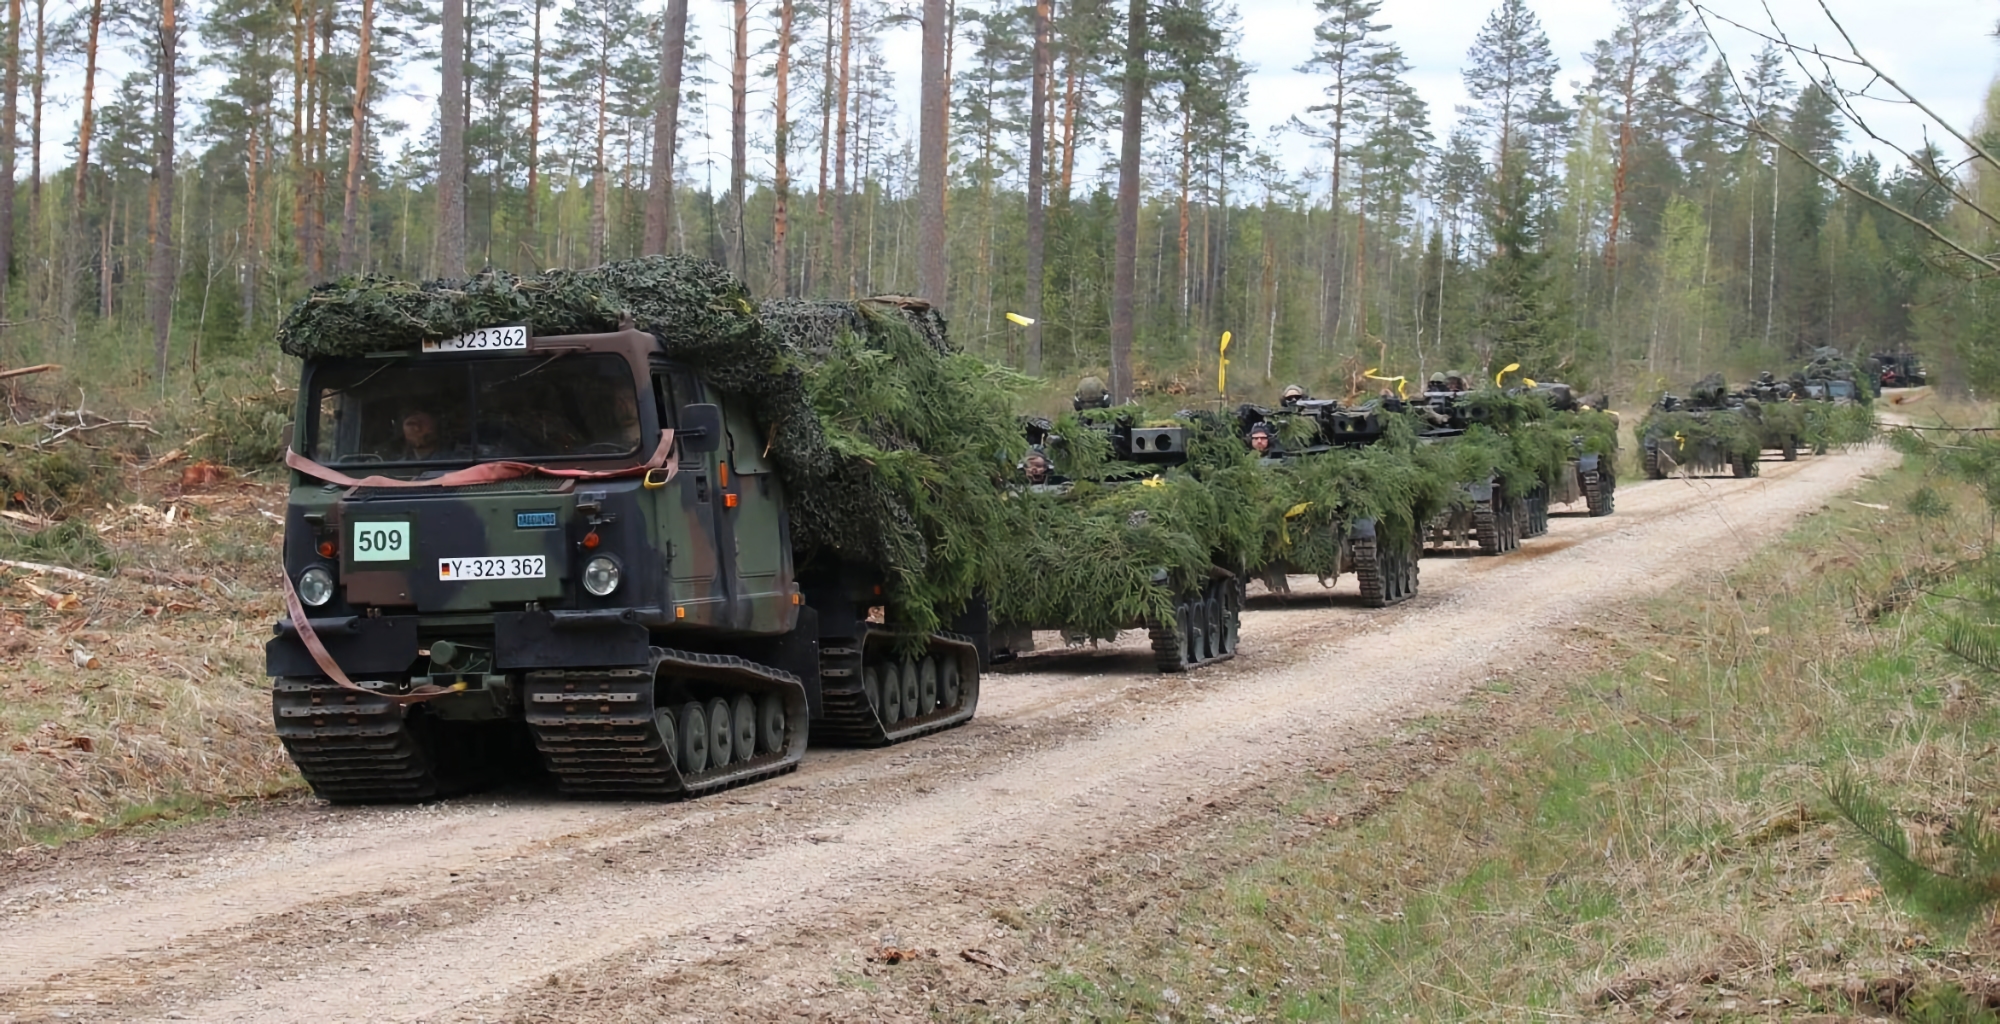 La Germania invia un nuovo pacchetto di aiuti militari all'Ucraina che include veicoli fuoristrada Bandvagn 206 e altre armi